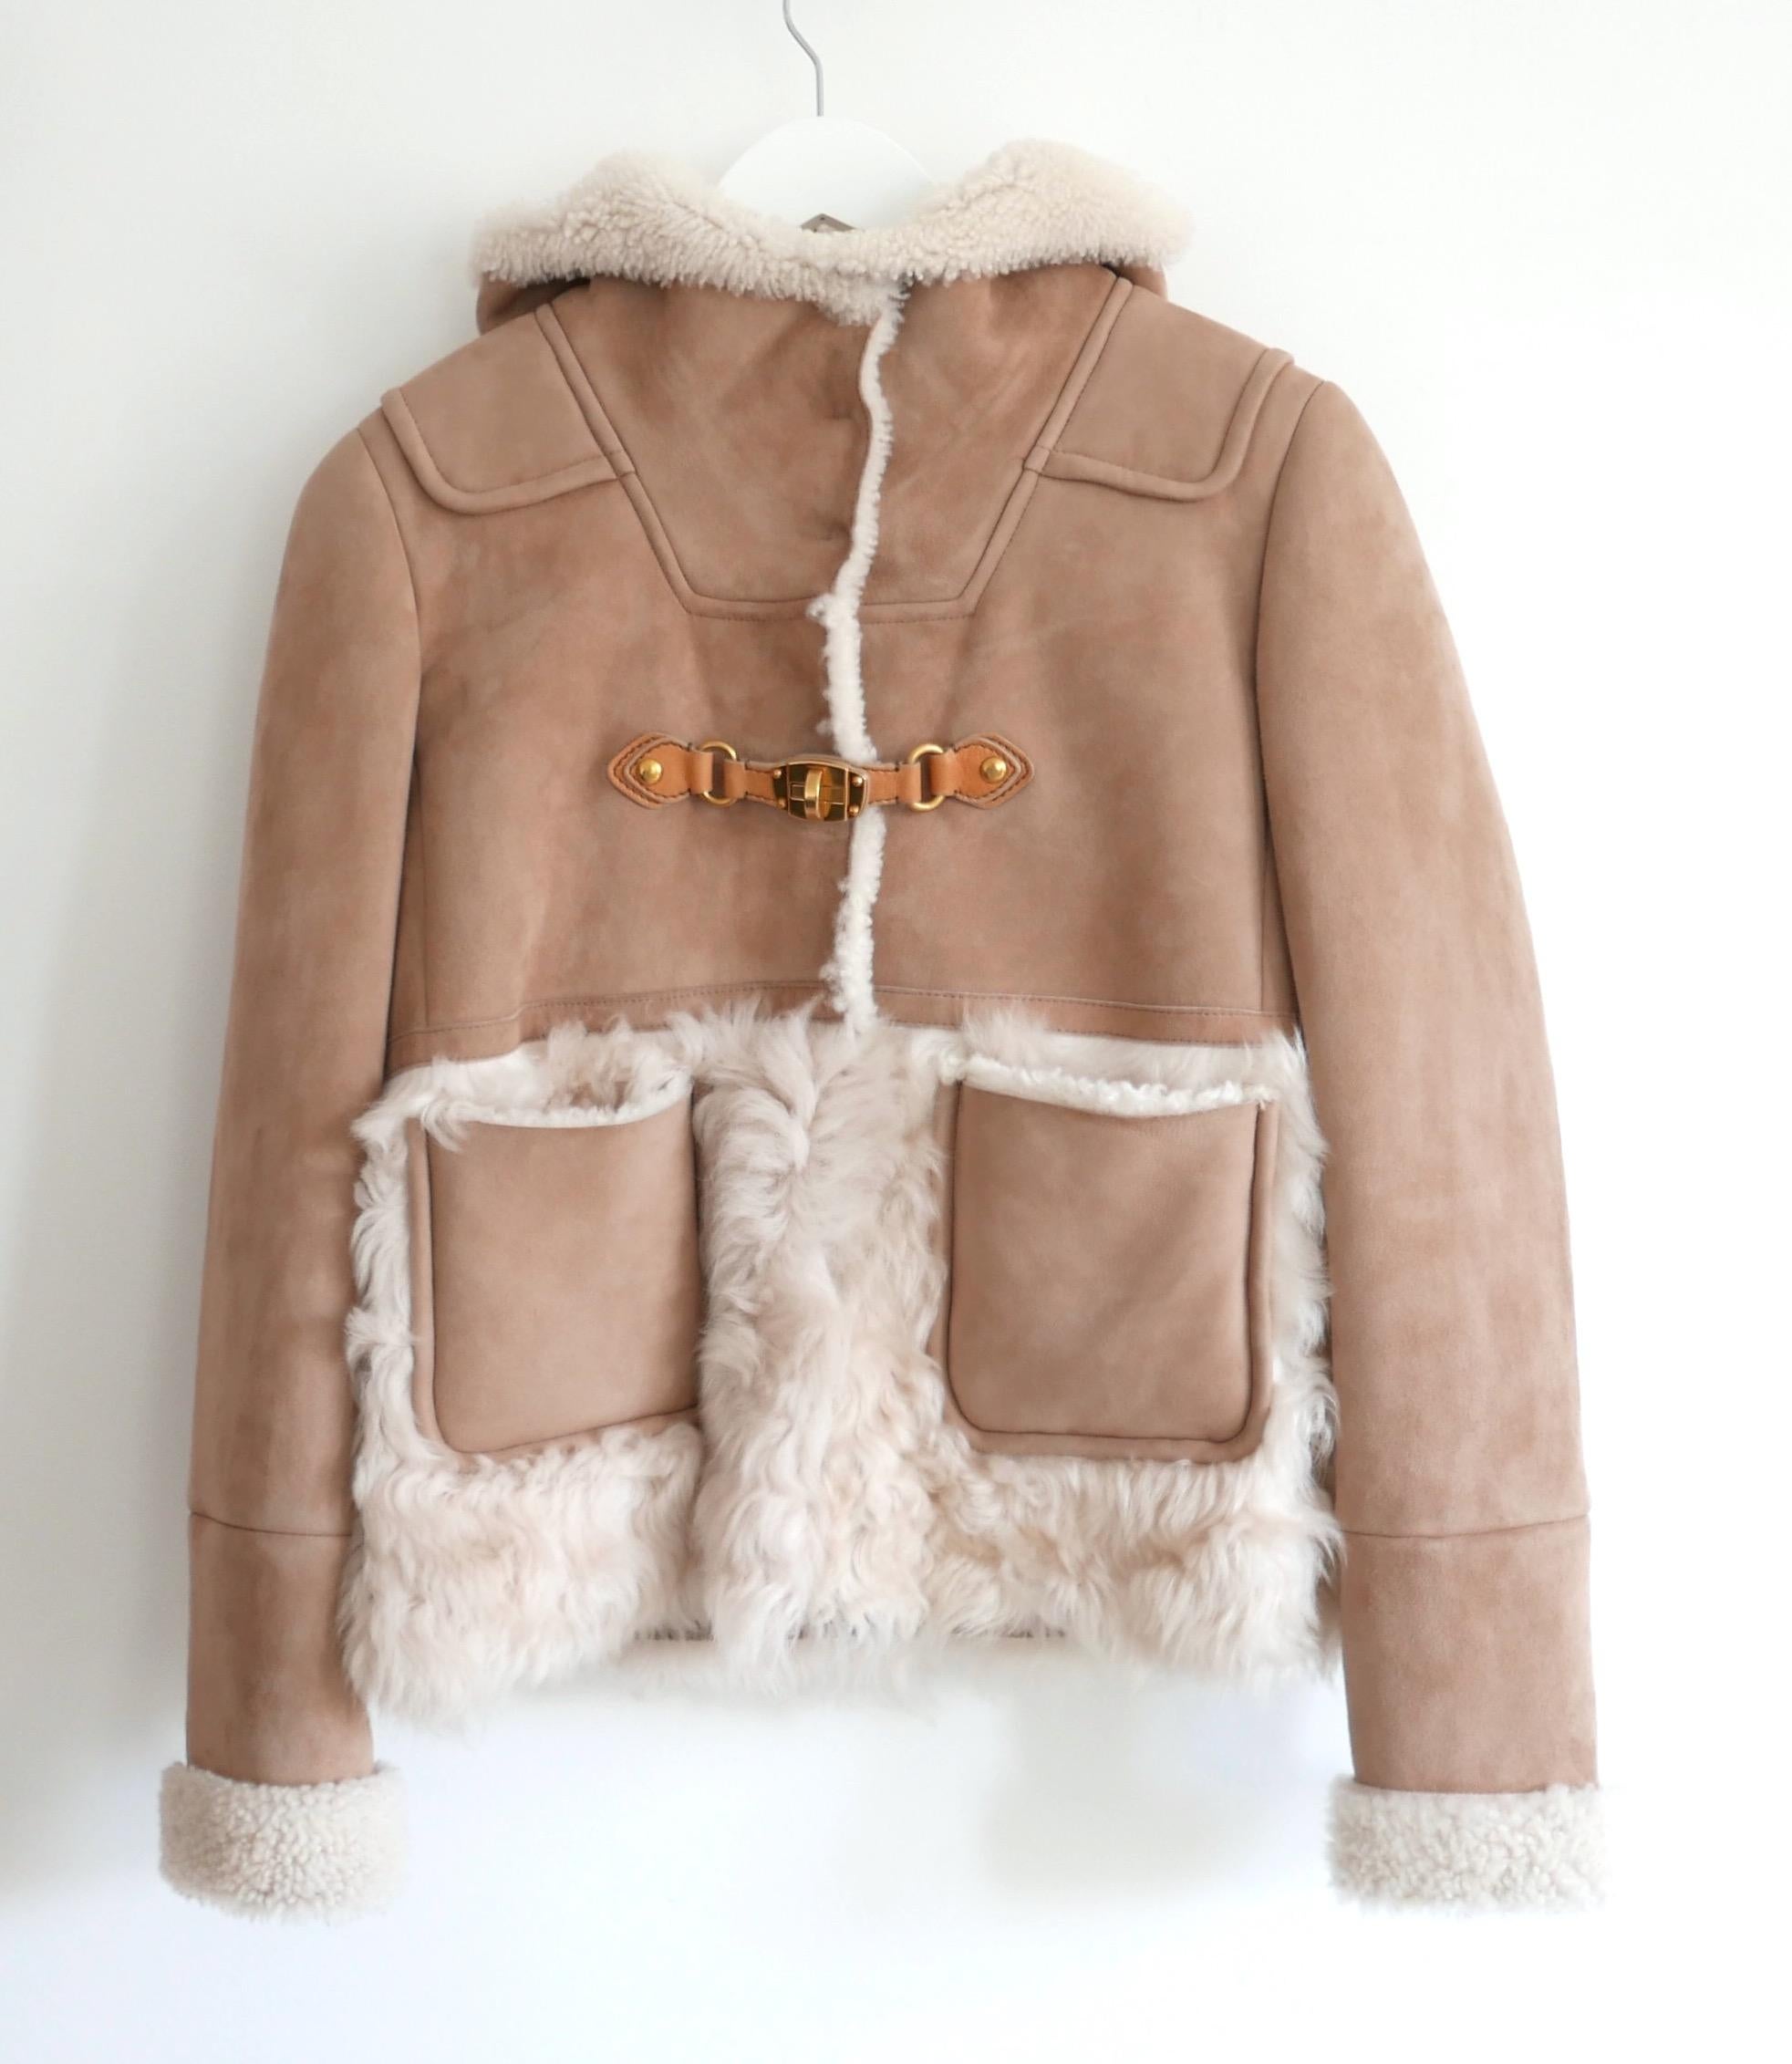 Magnifique manteau court en shearling Miu Miu Pre-Fall 2010 d'archive. Acheté pour £3500 et non porté. Fabriqué en daim super doux de couleur camel avec un intérieur épais et duveteux, il est doté de poches frontales, d'une capuche profonde, d'un